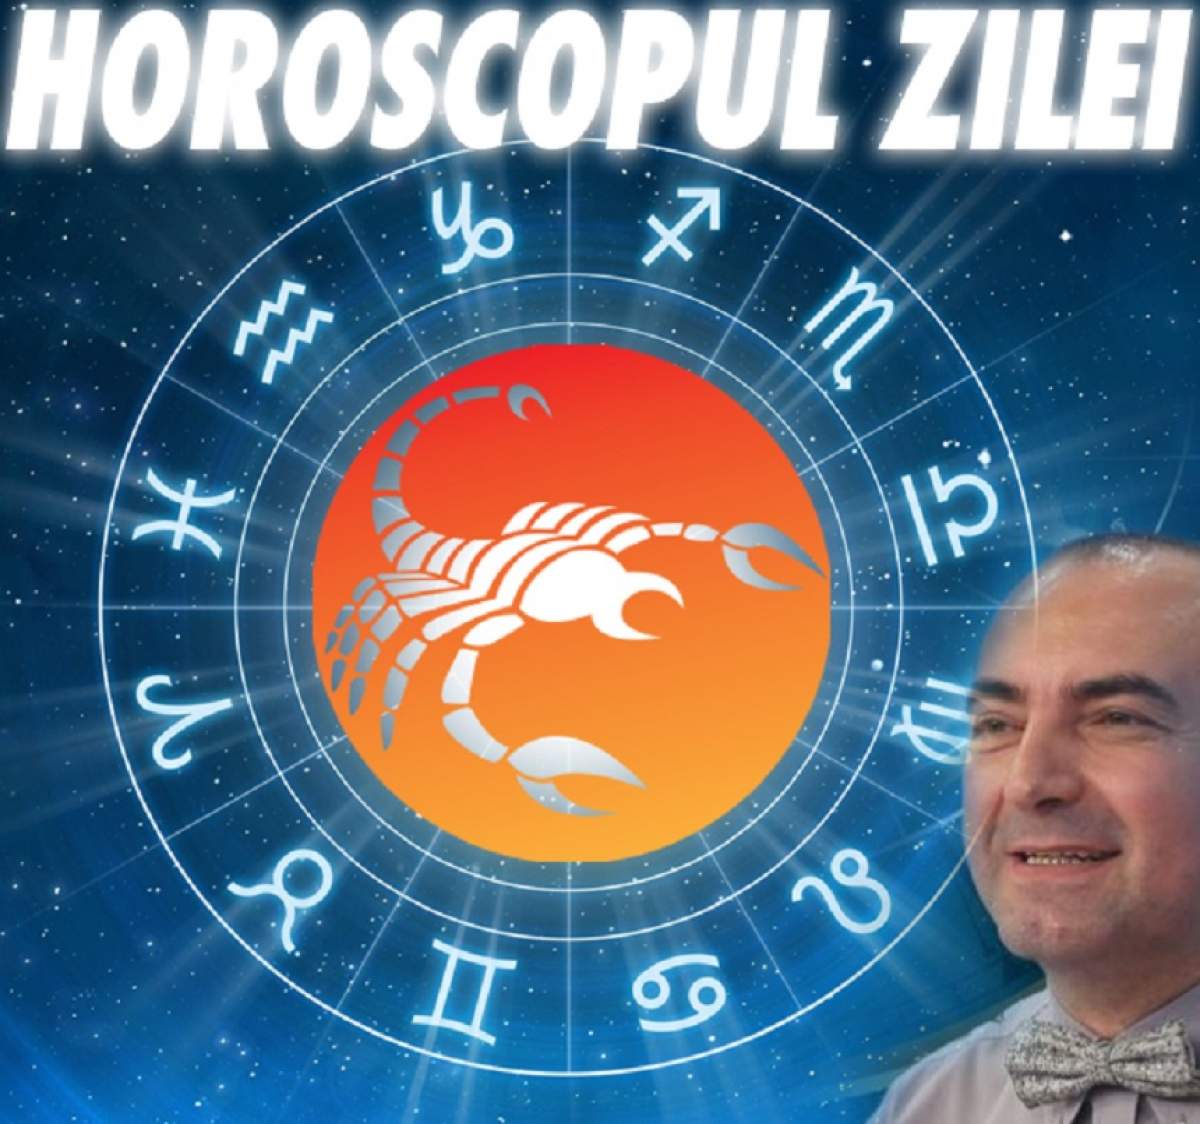 HOROSCOPUL ZILEI - 16 OCTOMBRIE: Berbecii se propulsează spre succes, iar nativii Scorpion au noroc